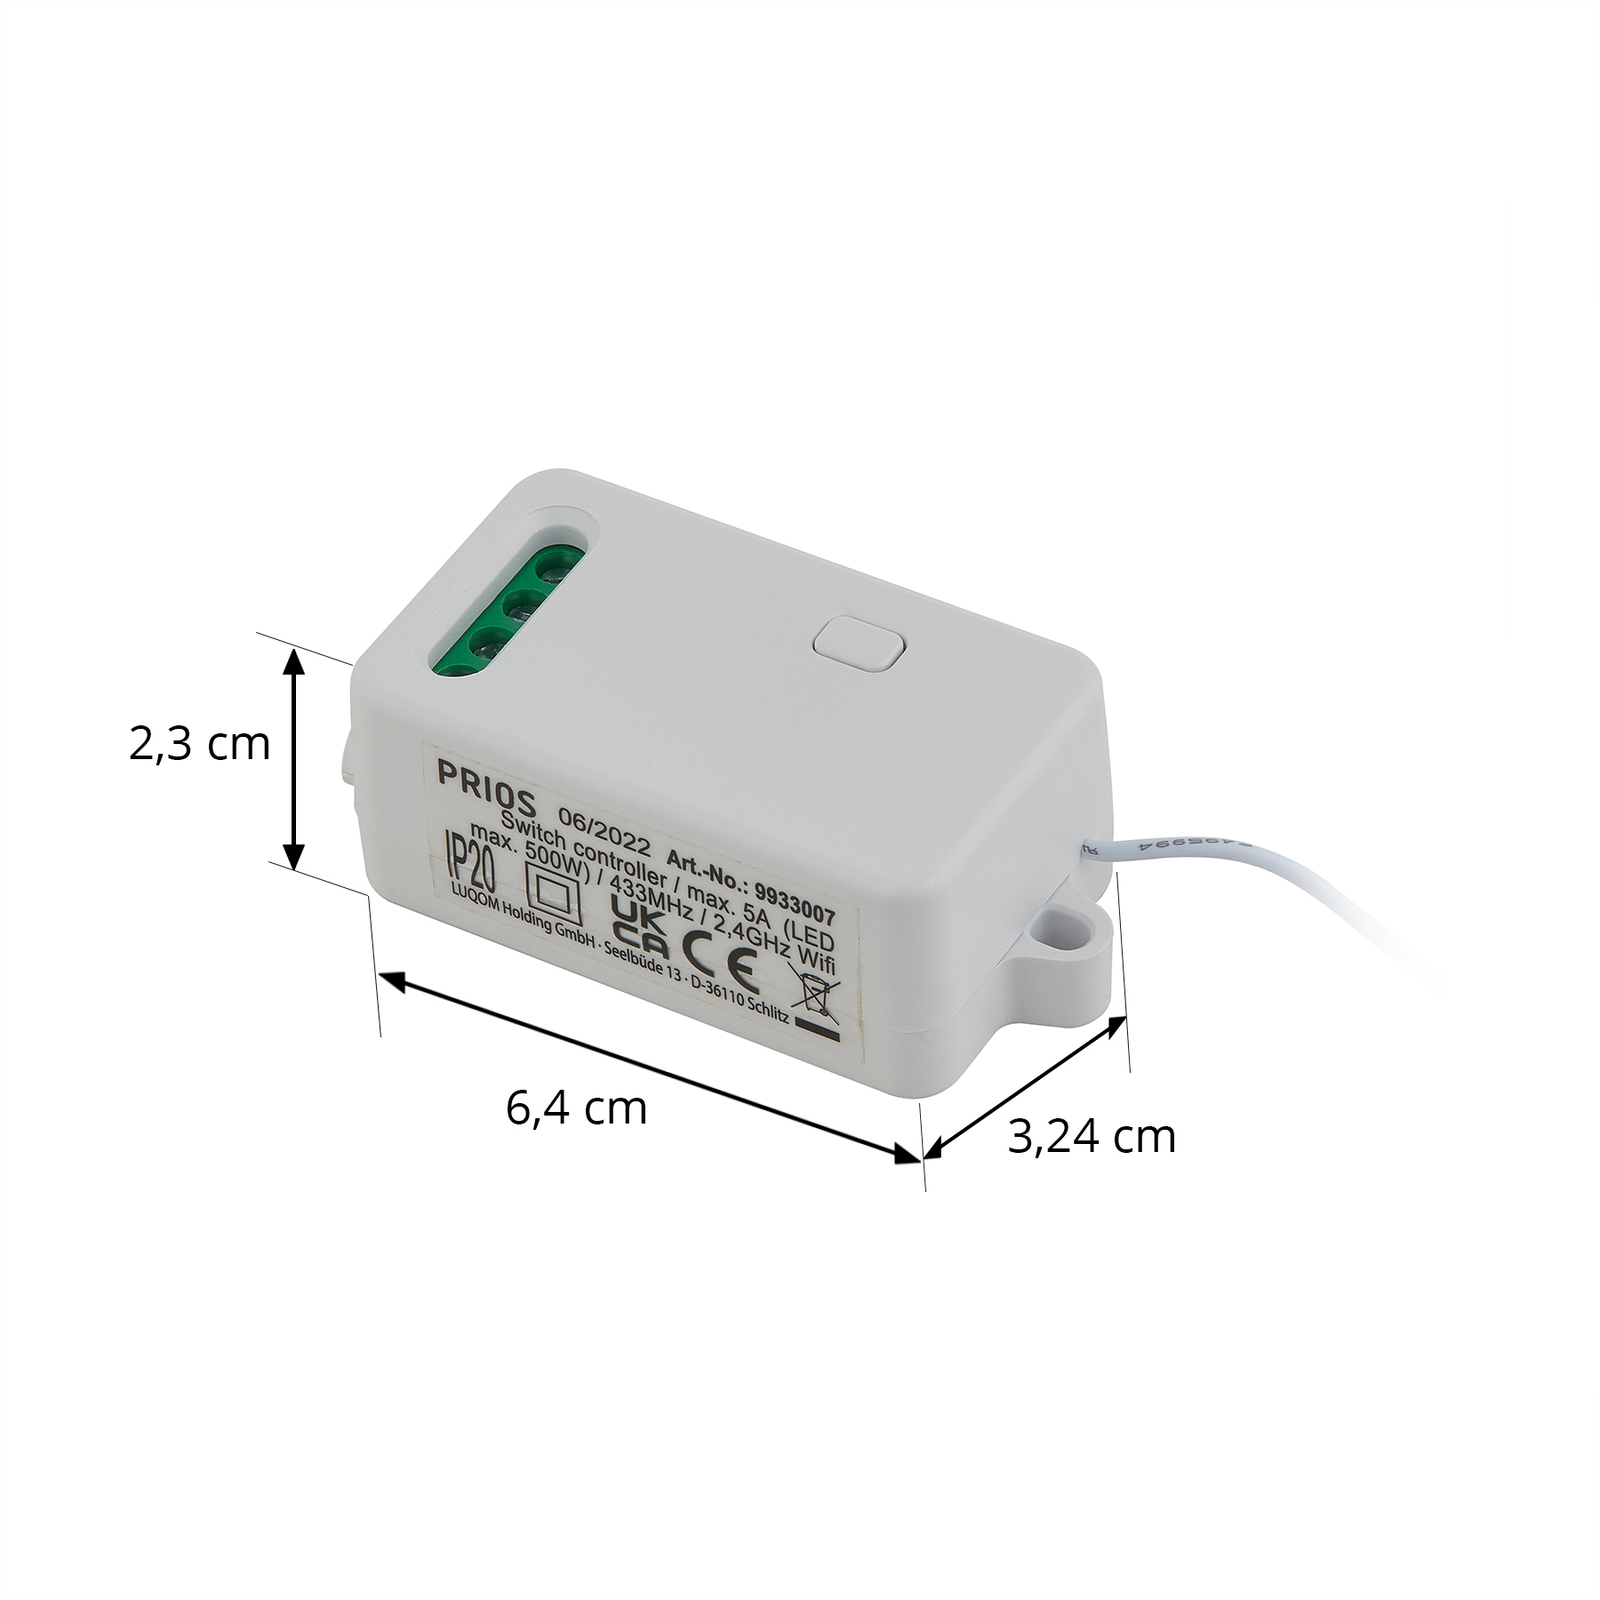 Receptor WiFi Evasko de Prios para interruptores de pared inalámbricos